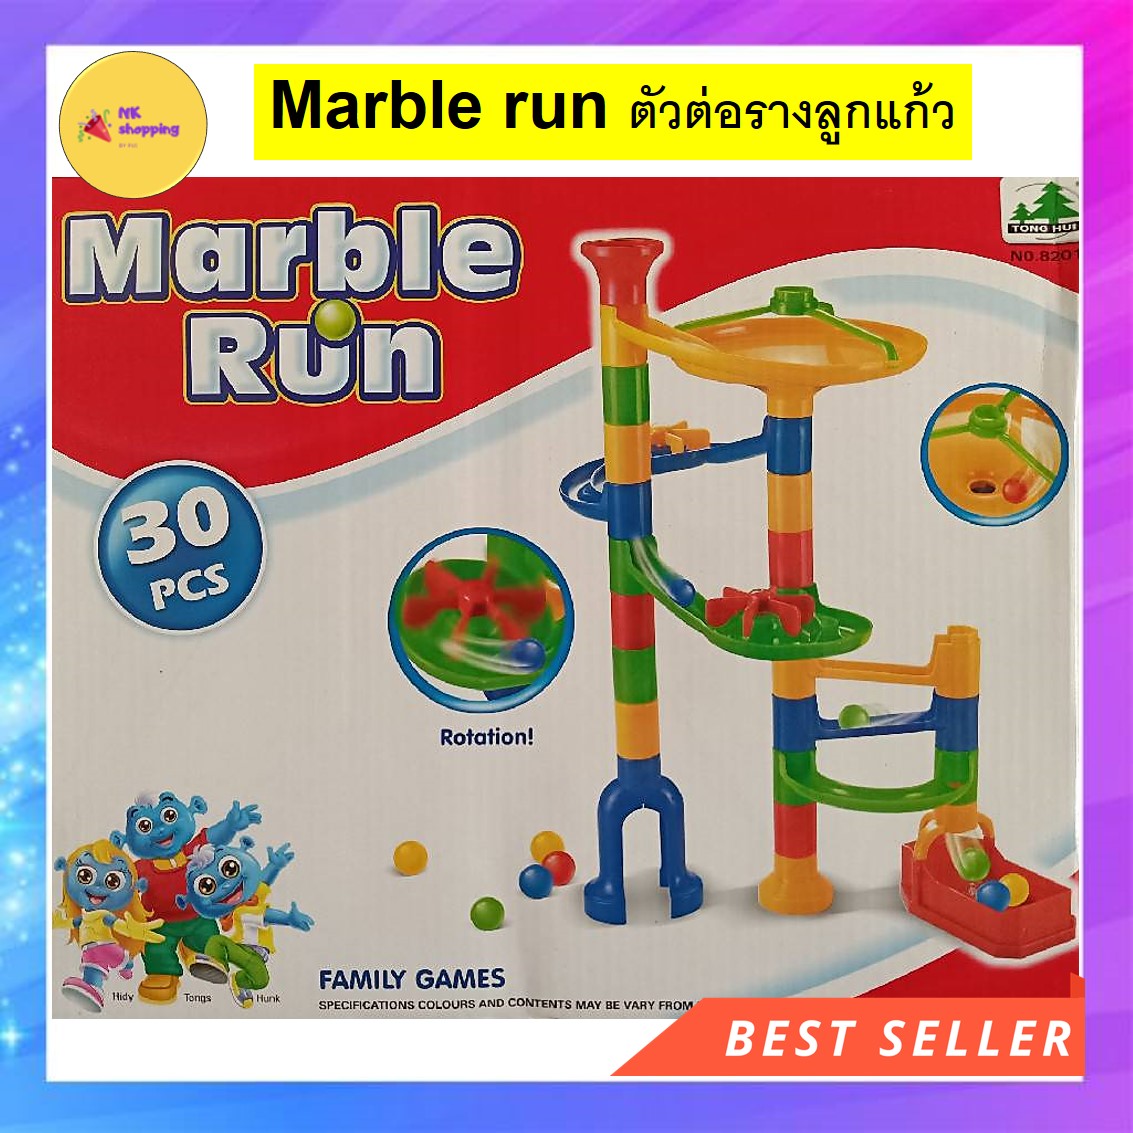 ของเล่นเด็ก ตัวต่อรางลูกแก้ว Marble run 30 ชิ้น ของเล่นเสริมพัฒนาการ ฝึกกล้ามเนื้อมือ ฝึกสมอง ให้น้องๆ รู้จักการสังเกต